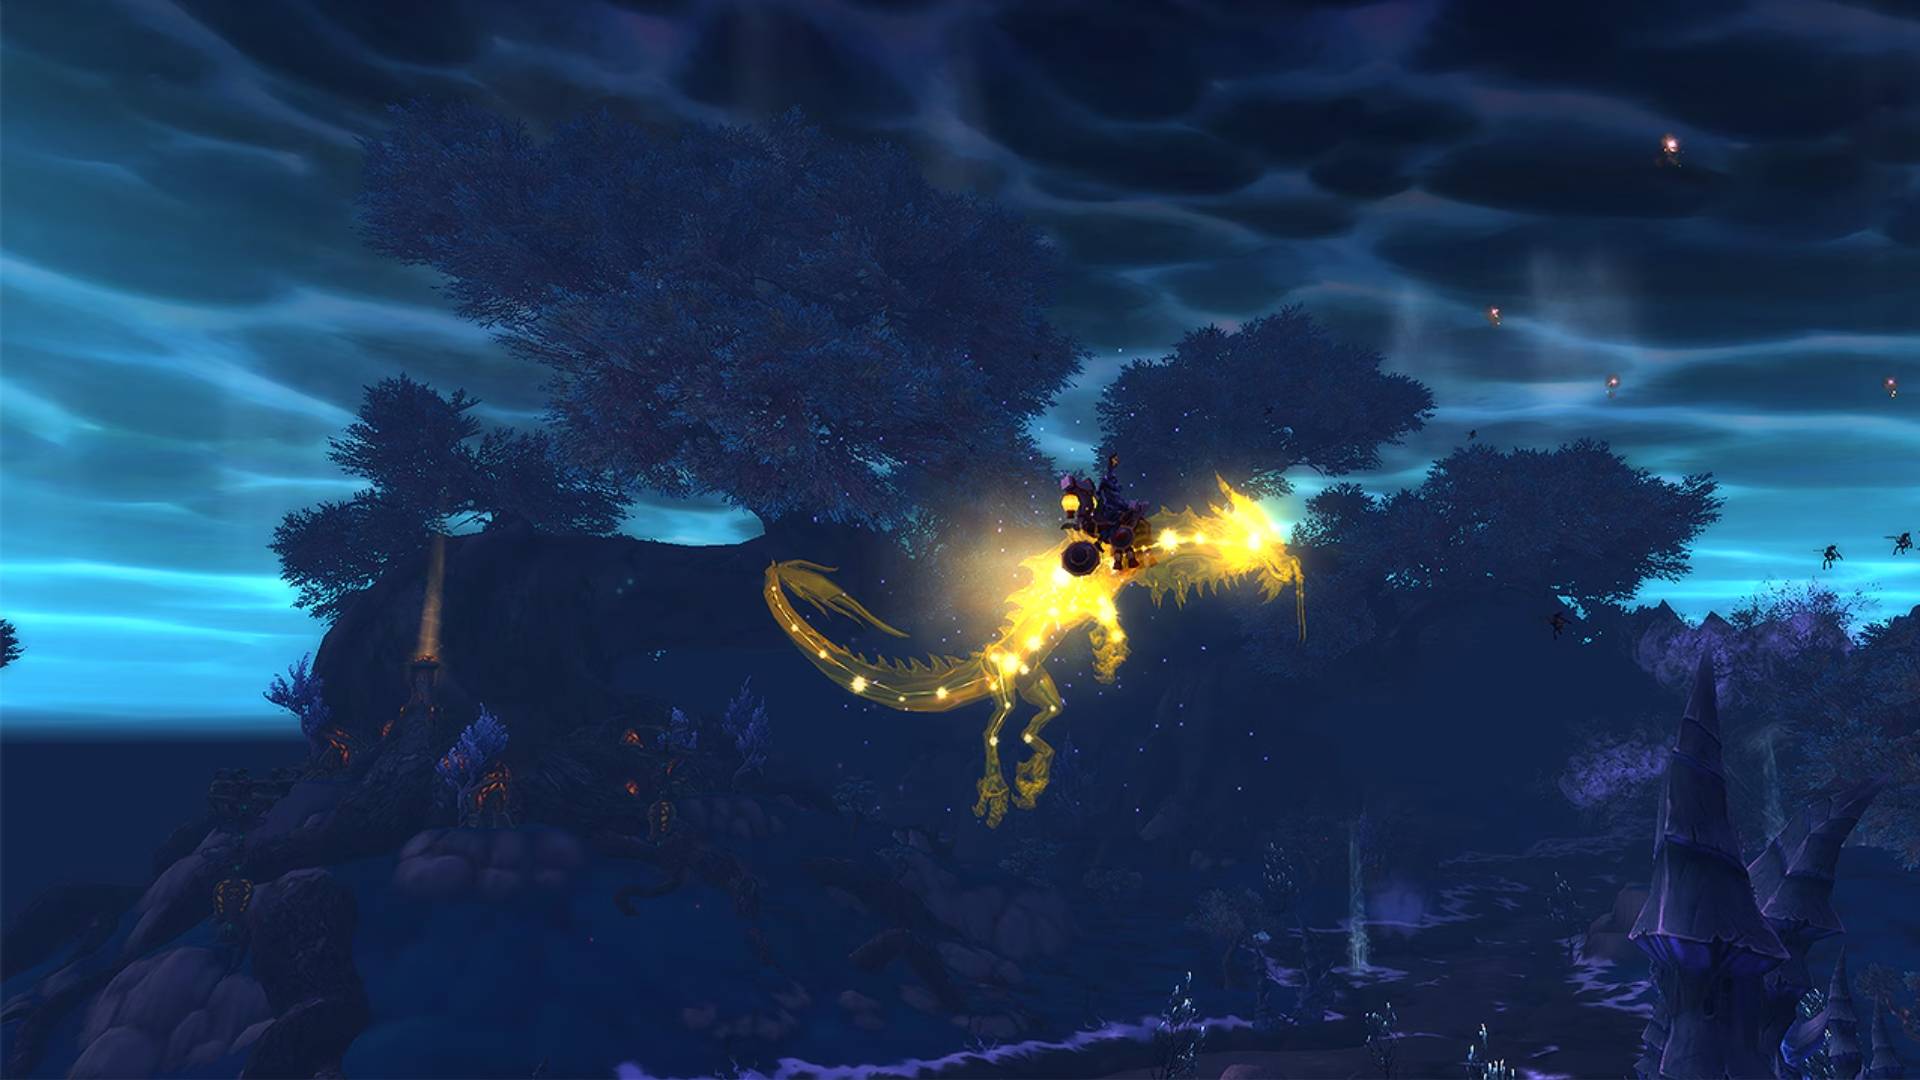 Karanlık bir gökyüzünde parlayan altın bir yılana binen bir World of Warcraft karakteri